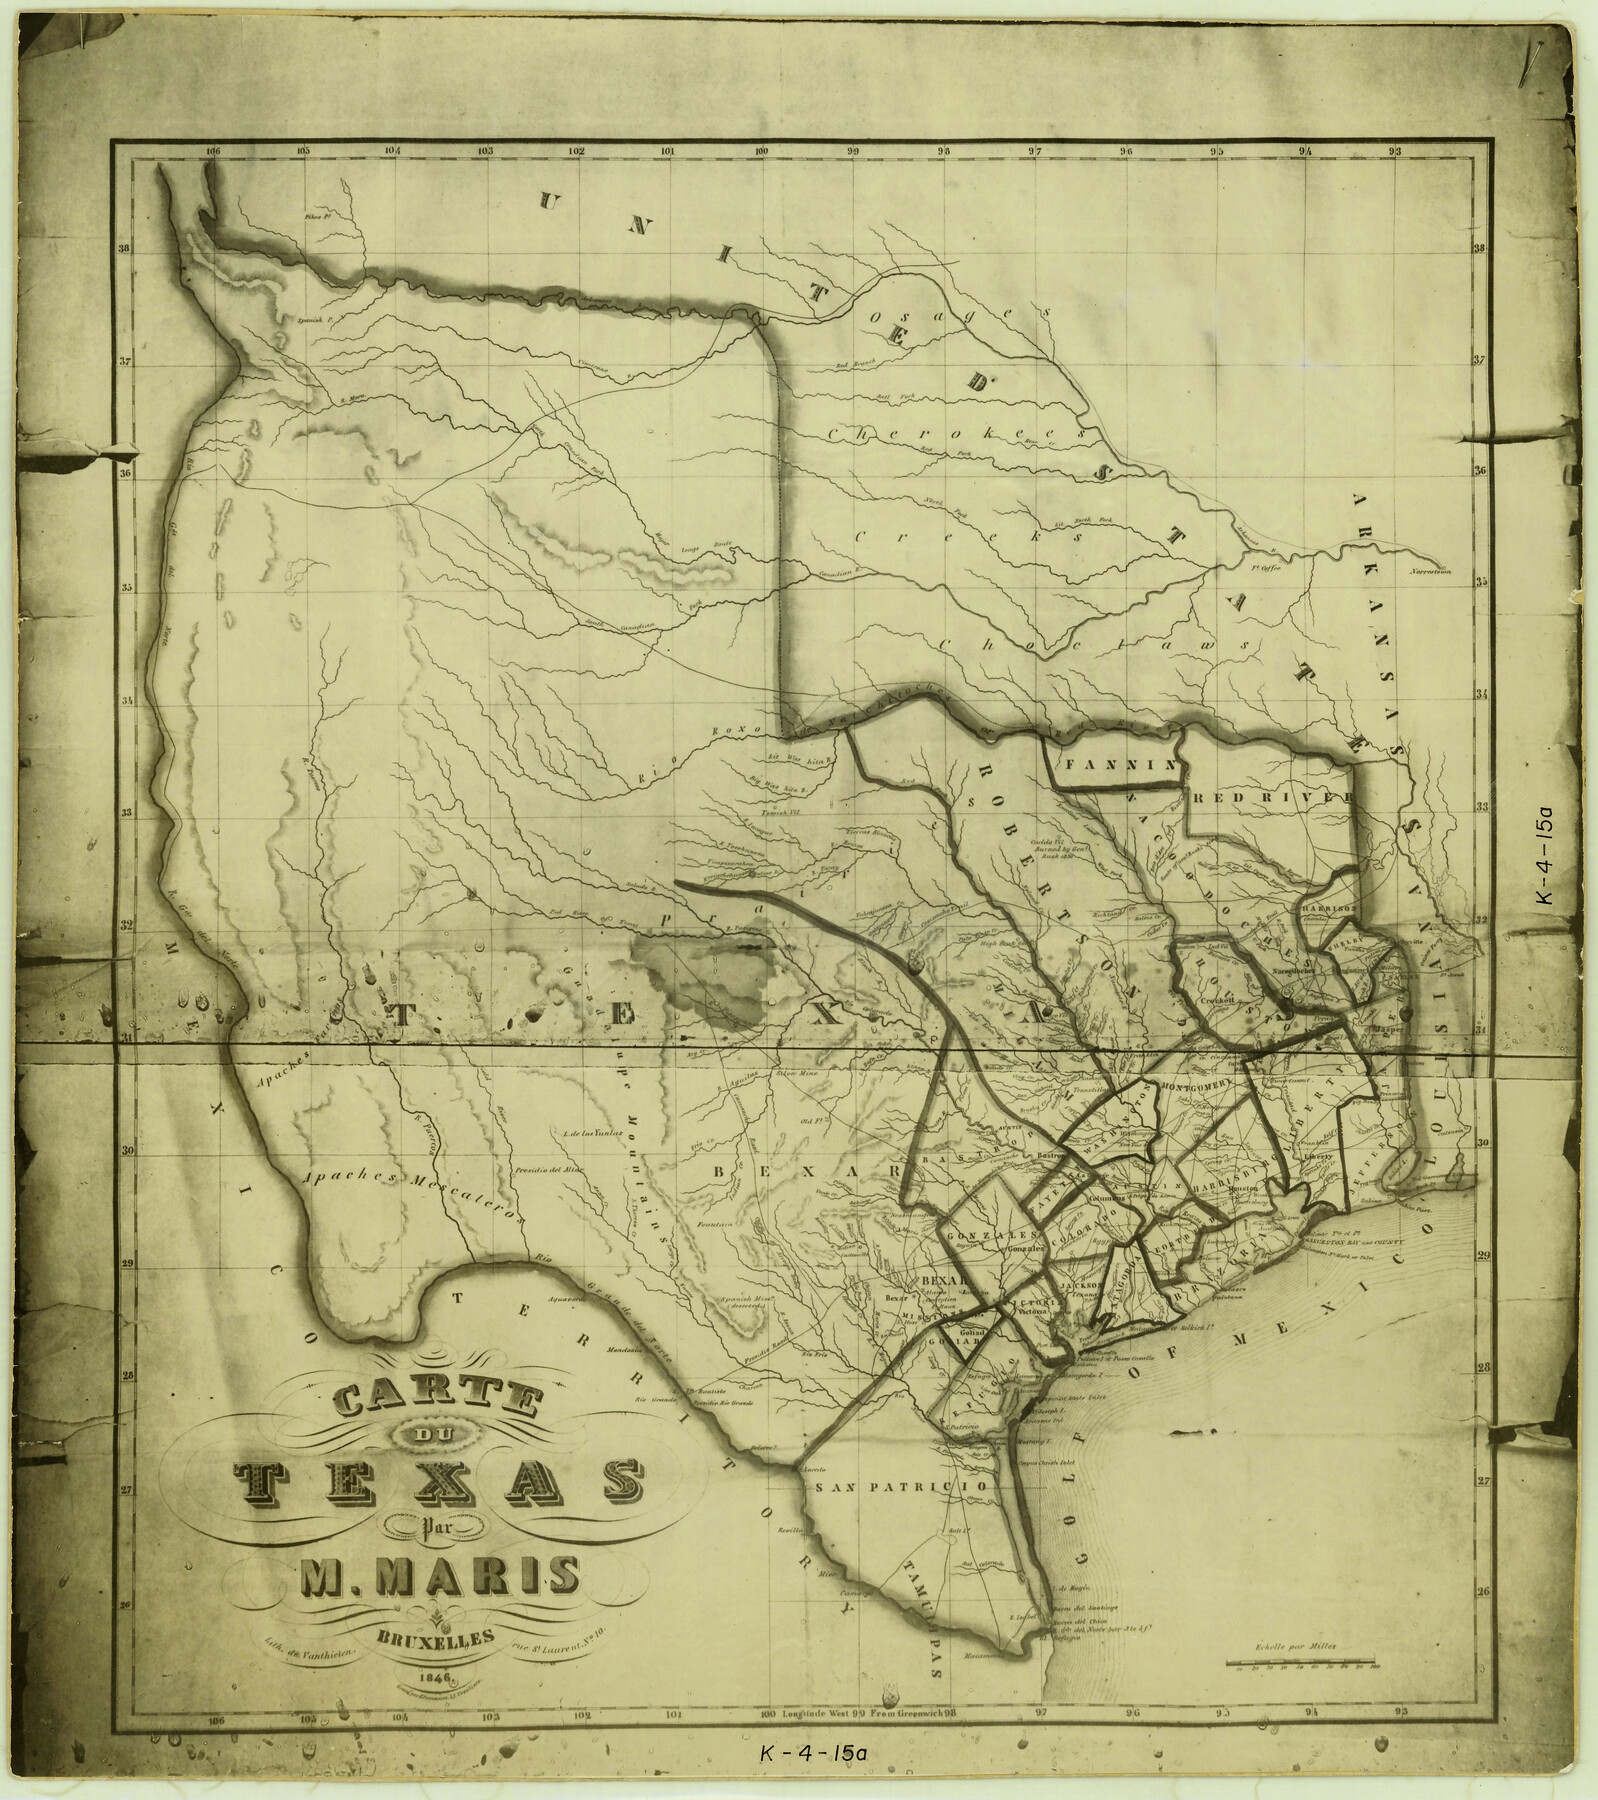 2119, Carte du Texas par M. Maris, General Map Collection